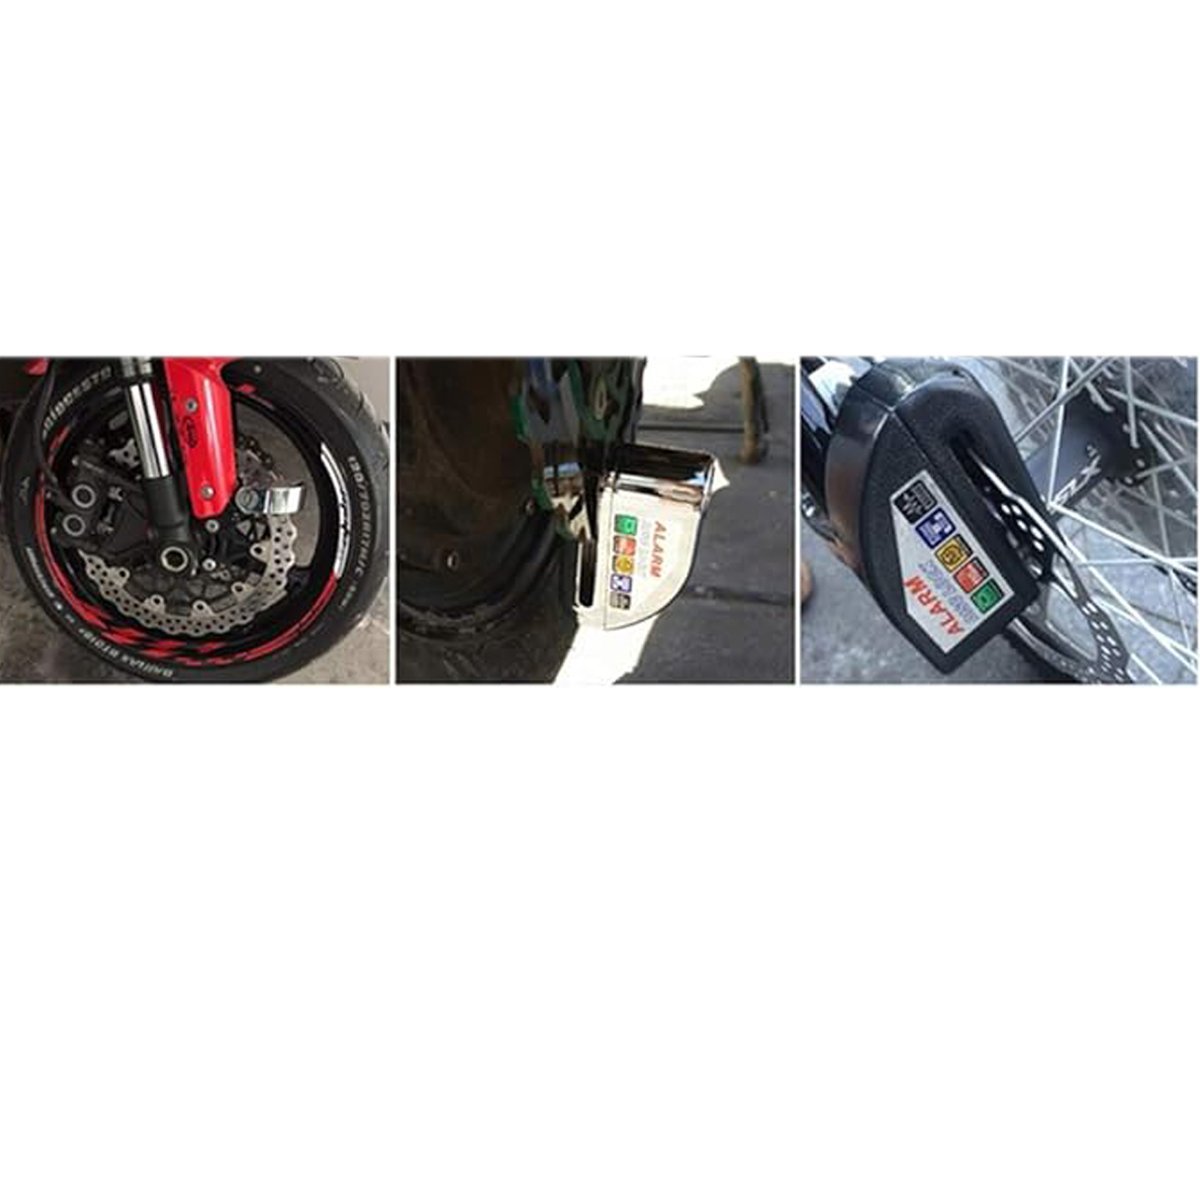 Trava de Disco Freio Cadeado Moto Alarme 110db Sensor Sonoro Anti Roubo Furto Motocicleta Bike Bicic - 5